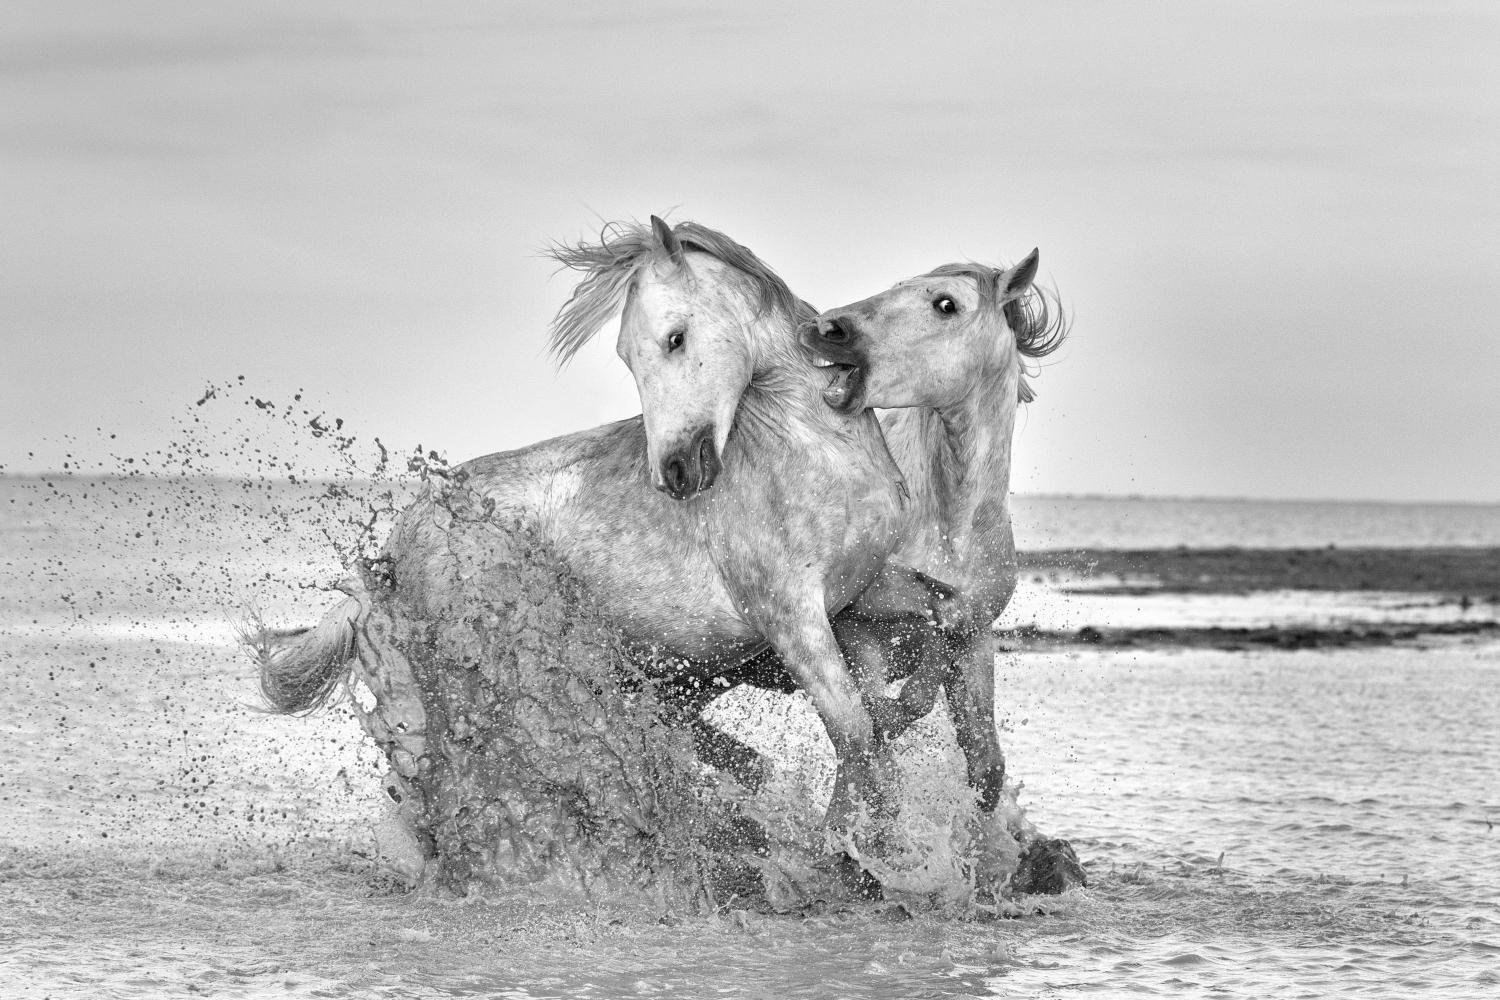 White Horses photo workshop